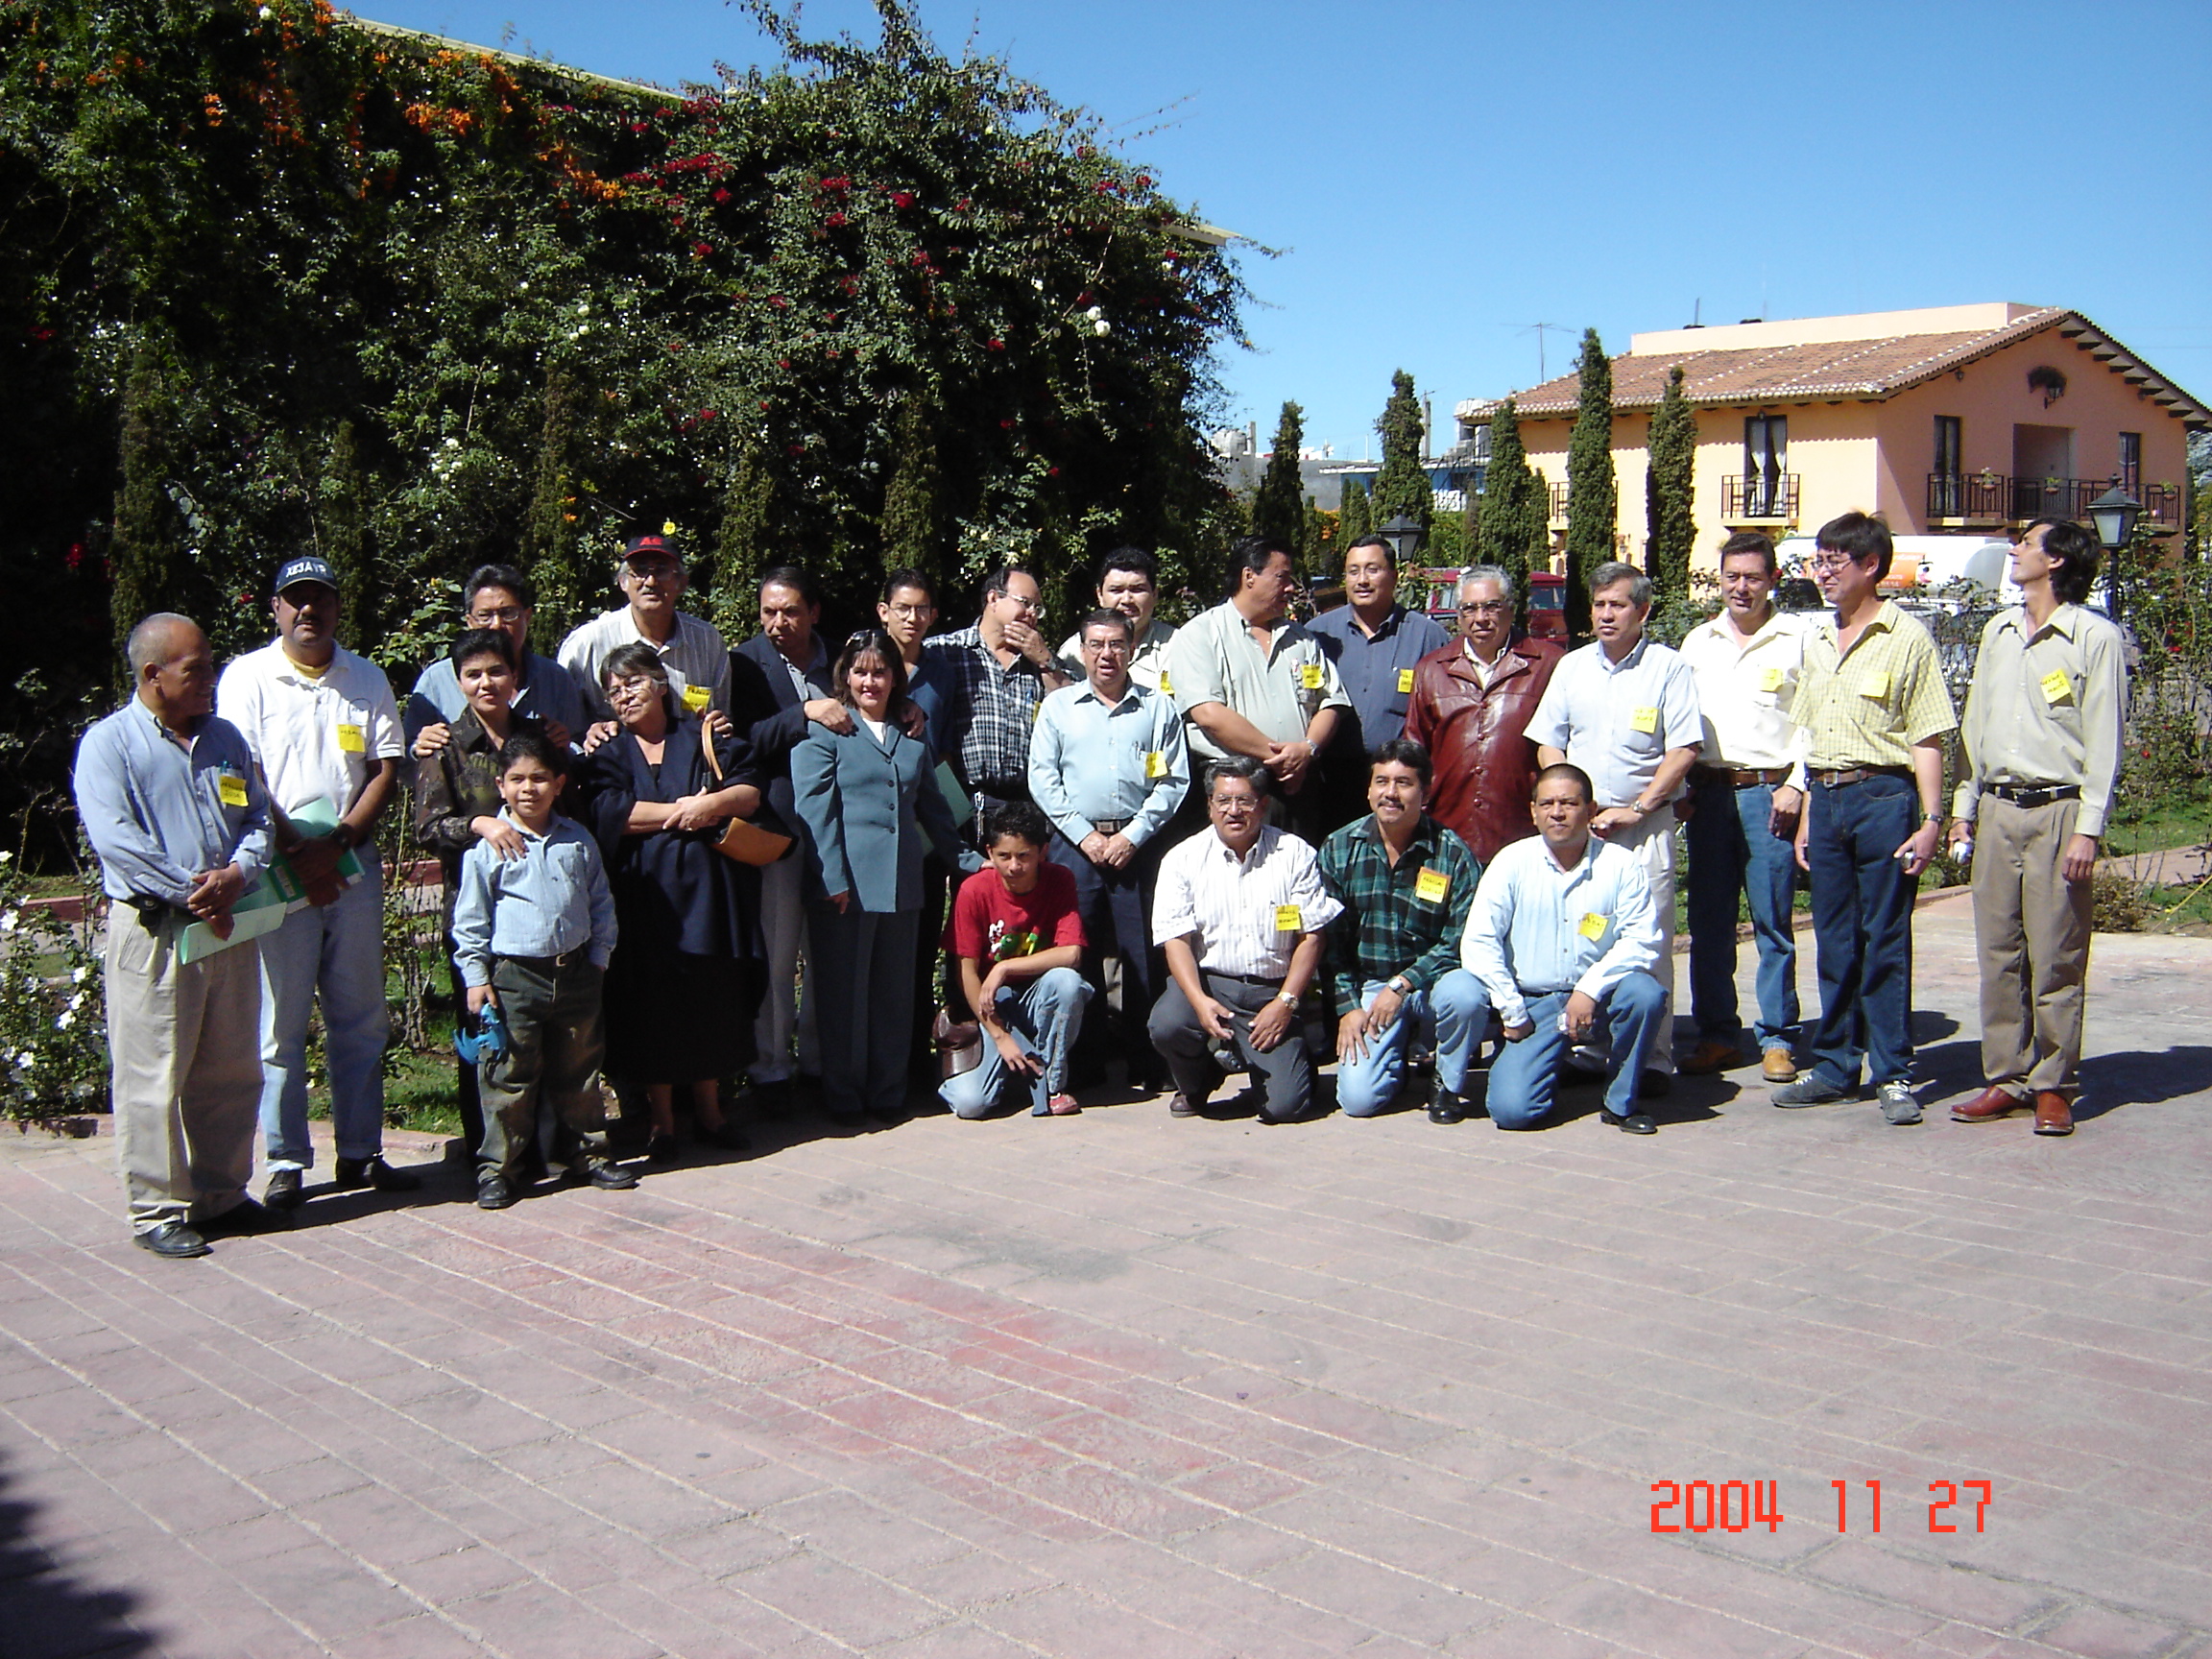 Reunion Chiapas 2004